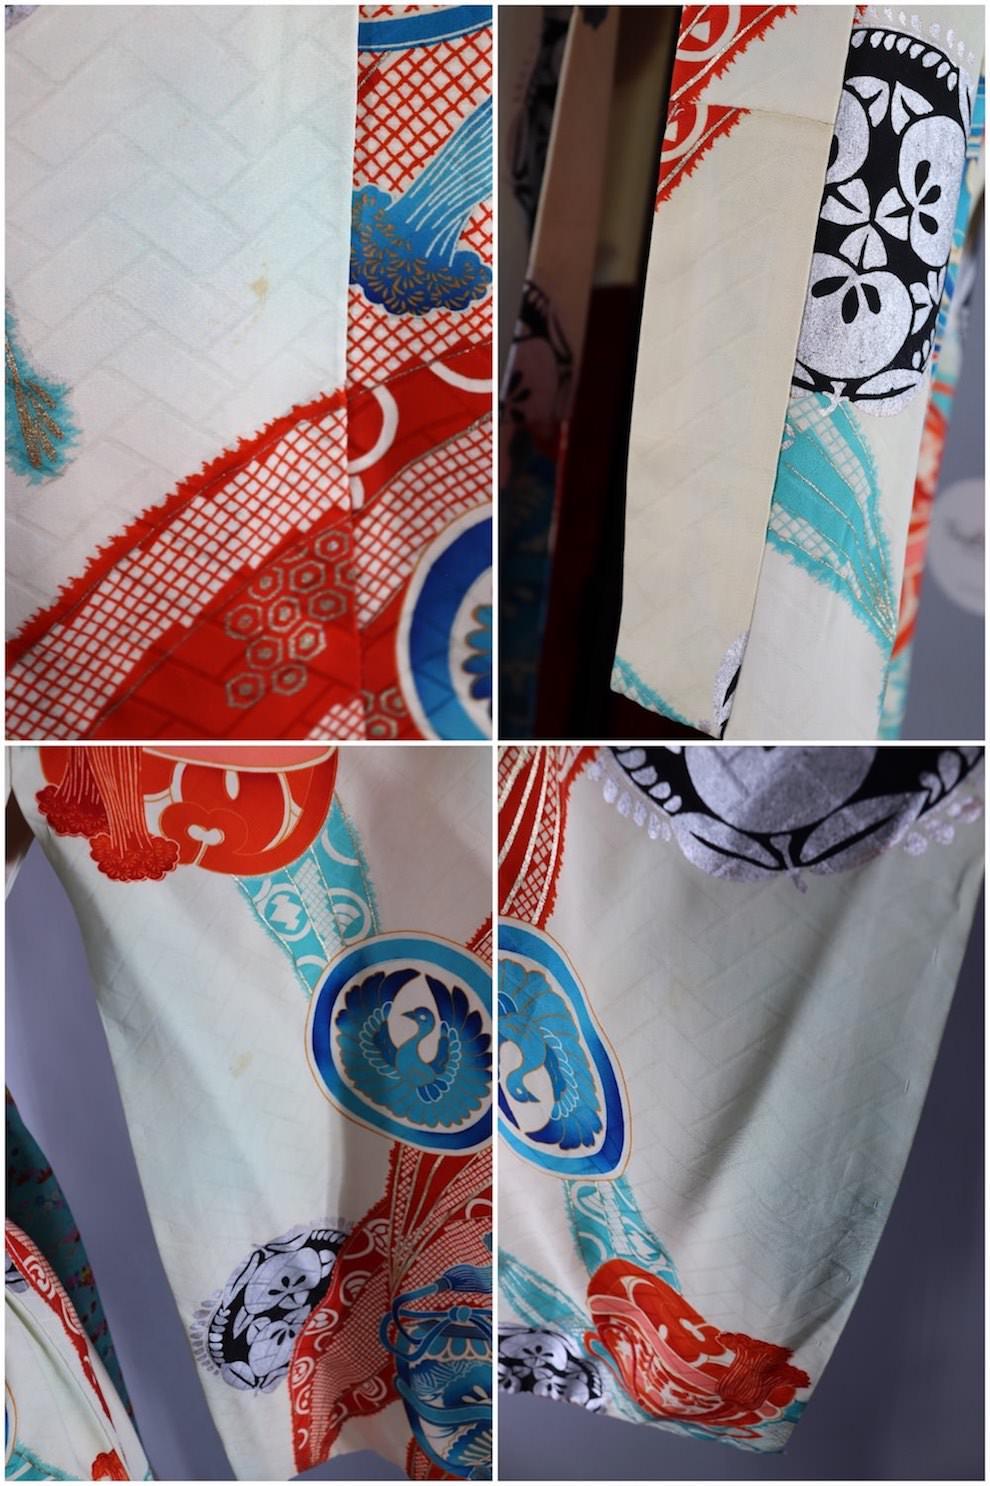 Vintage Silk Kimono Robe / White, Aqua, and Red - ThisBlueBird